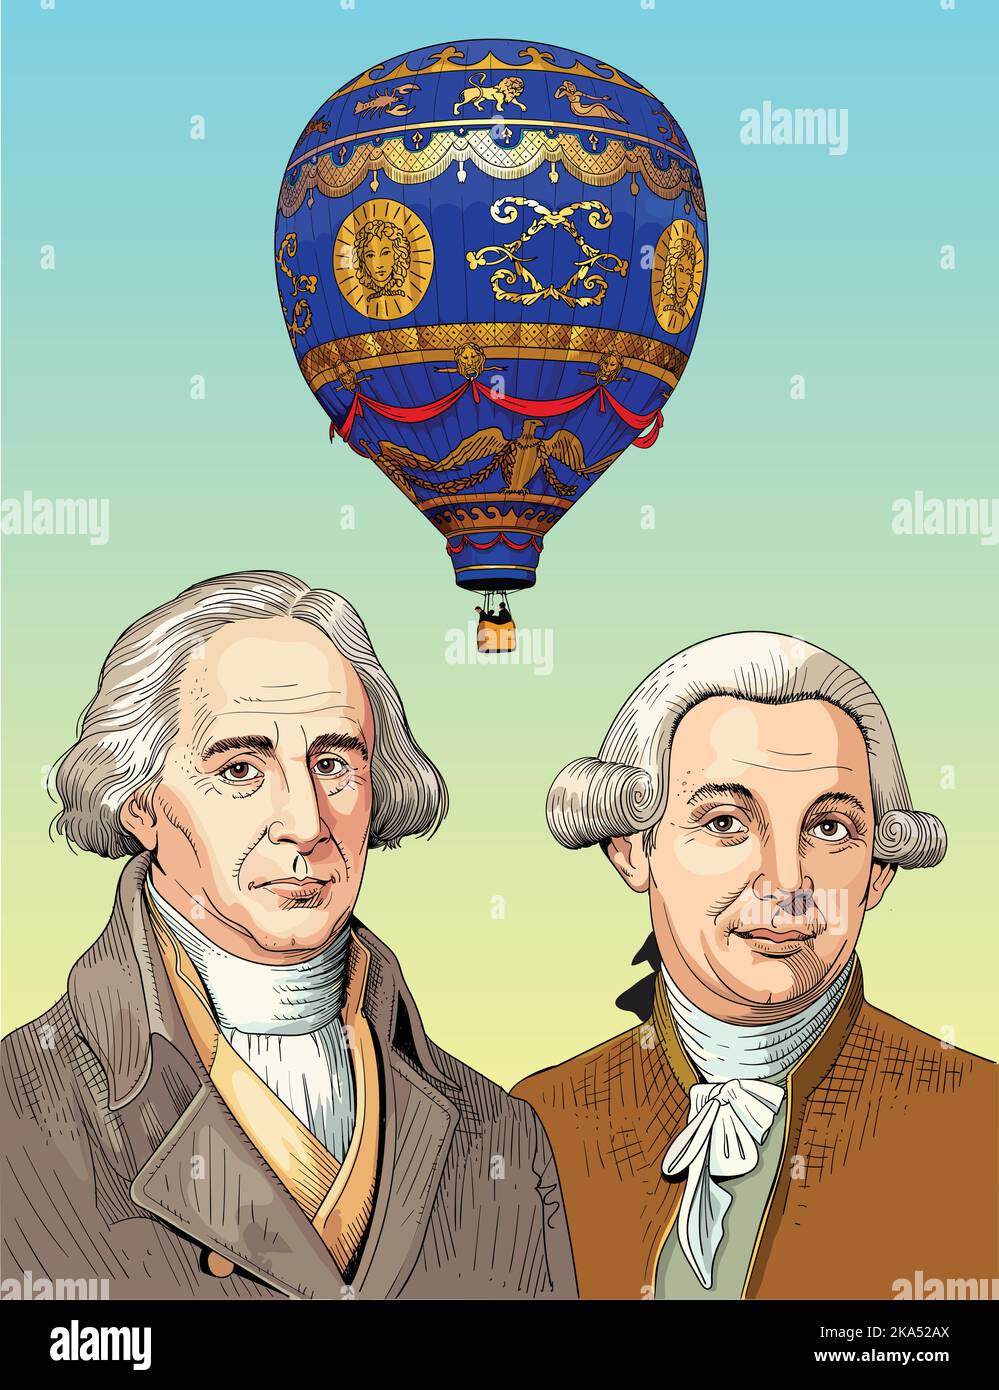 Joseph-Michel Montgolfier et Jacques-Étienne Montgolfier étaient pionniers de l'aviation, des balloonistes et des fabricants de papier de la commune Annonay en Ardè Illustration de Vecteur